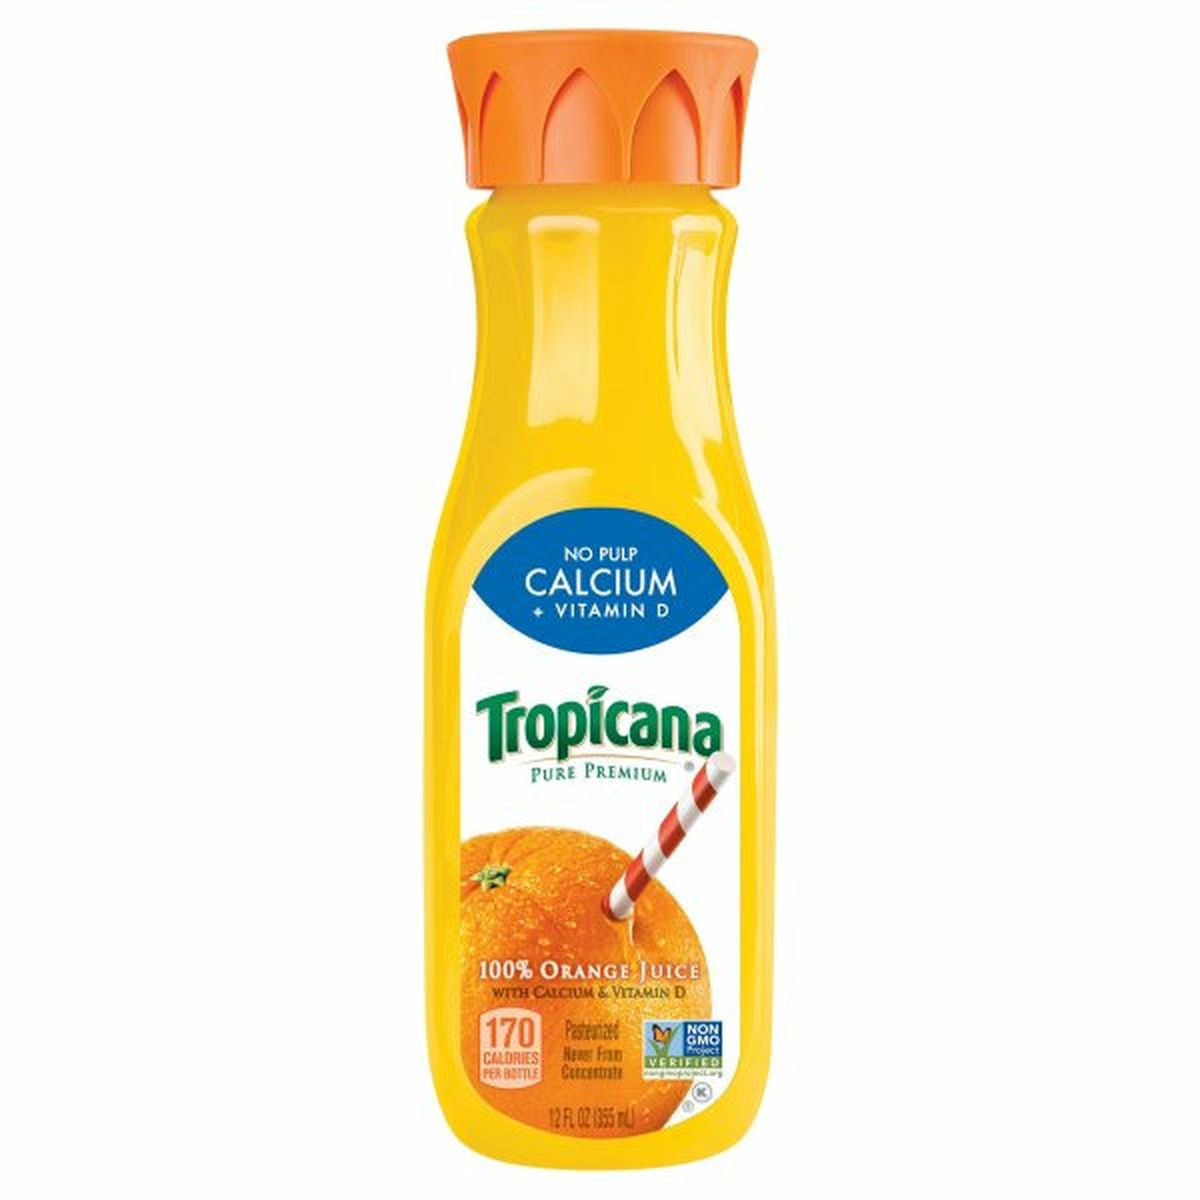 Calories in Tropicana Pure Premium 100% Juice, Orange No Pulp with Calcium and Vitamin D